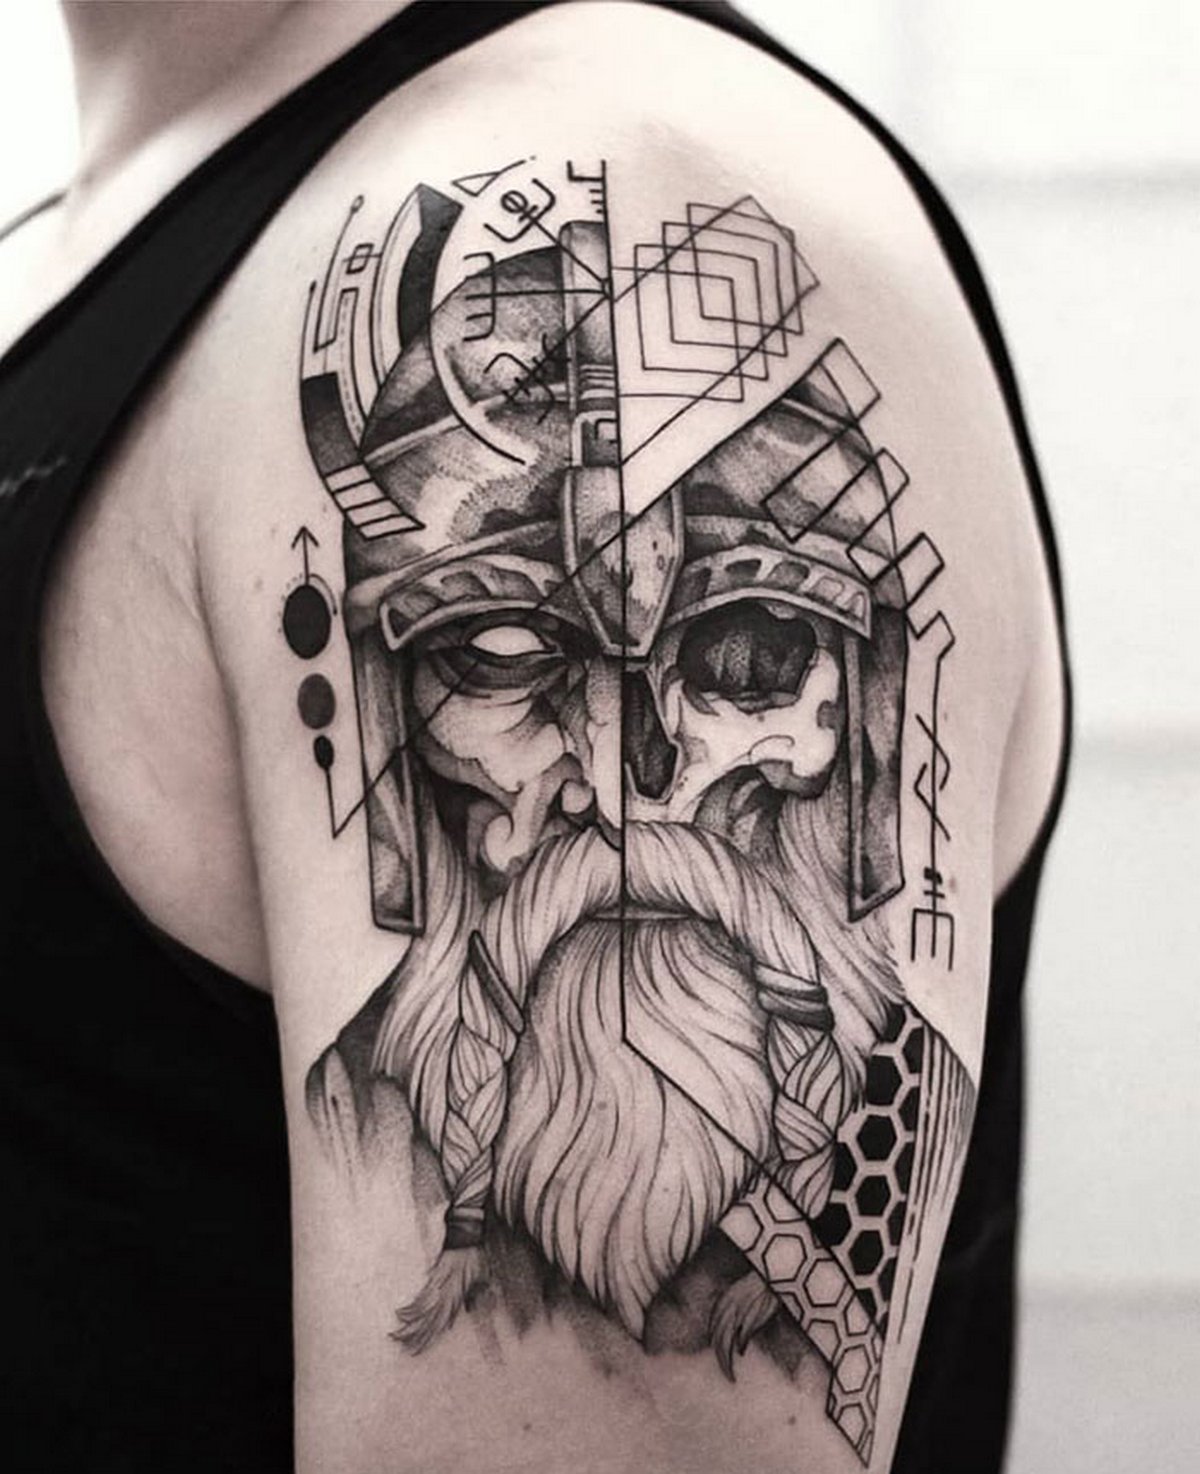 Voici des tatouages vikings qui déchirent